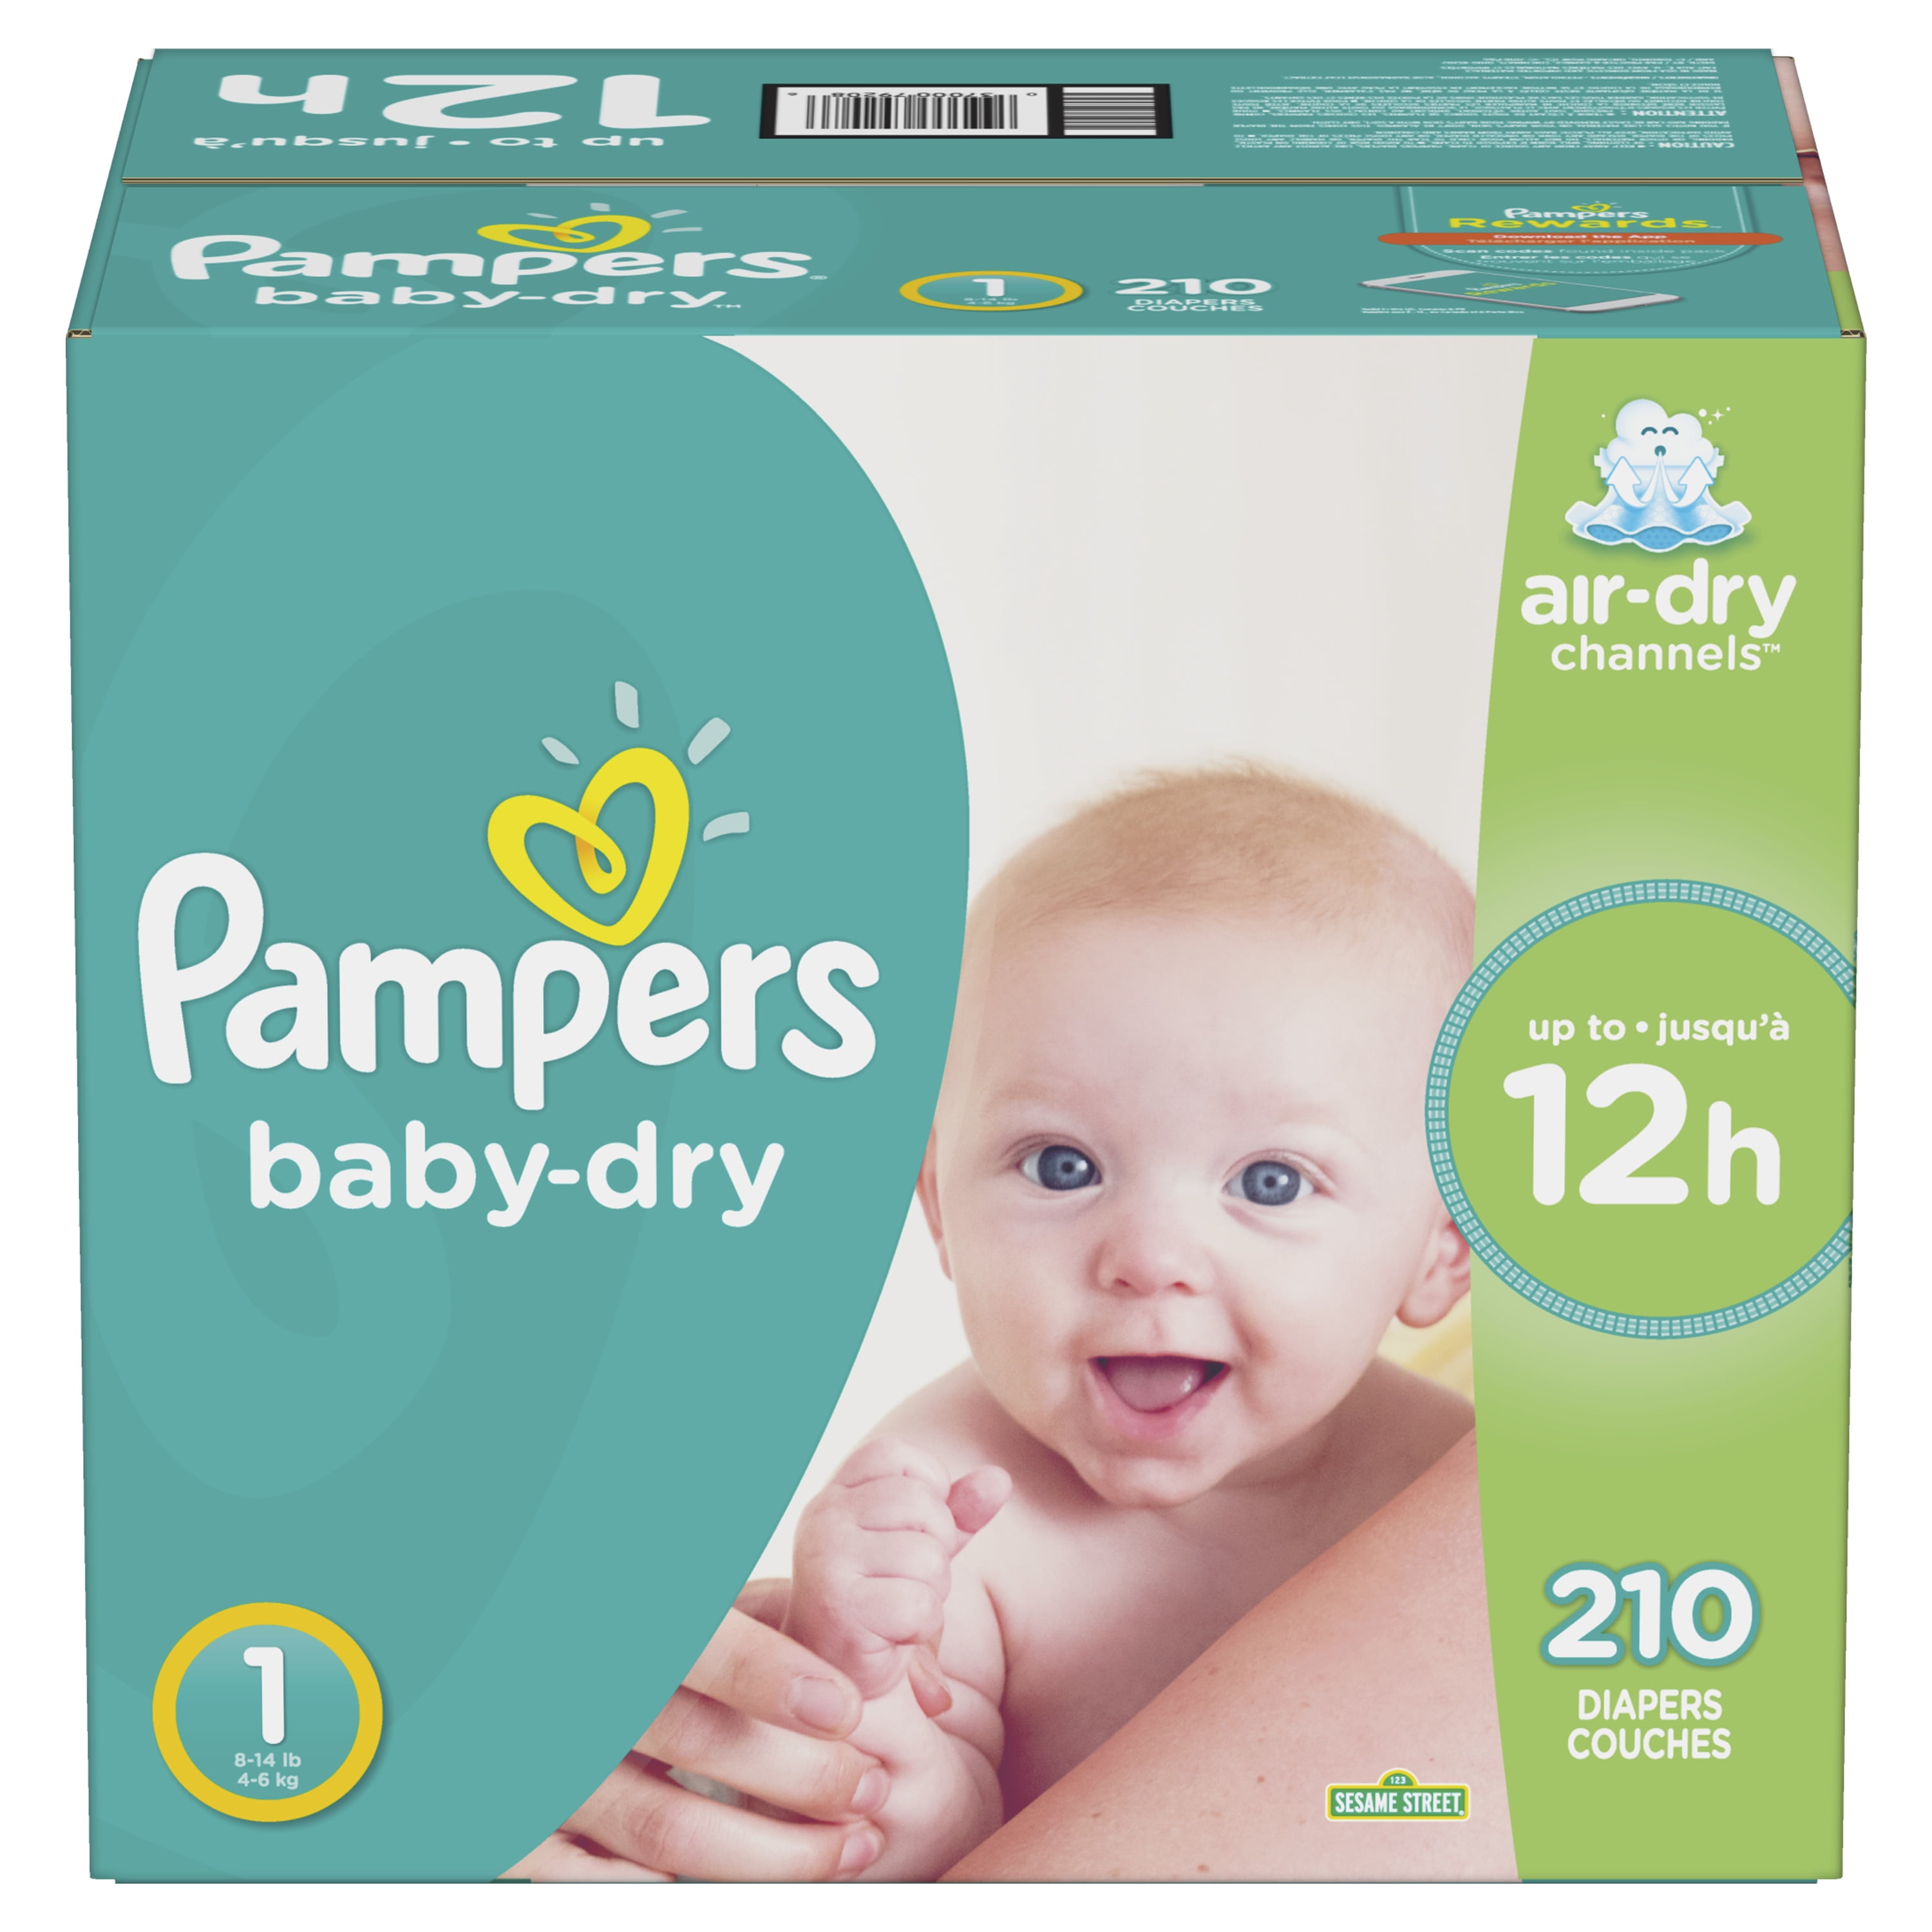 Ongelofelijk Sporten aankunnen Pampers Baby-Dry Hypoallergenic Comfortable Wetness Indicator Diapers -  Size 1, 210 Count - Walmart.com